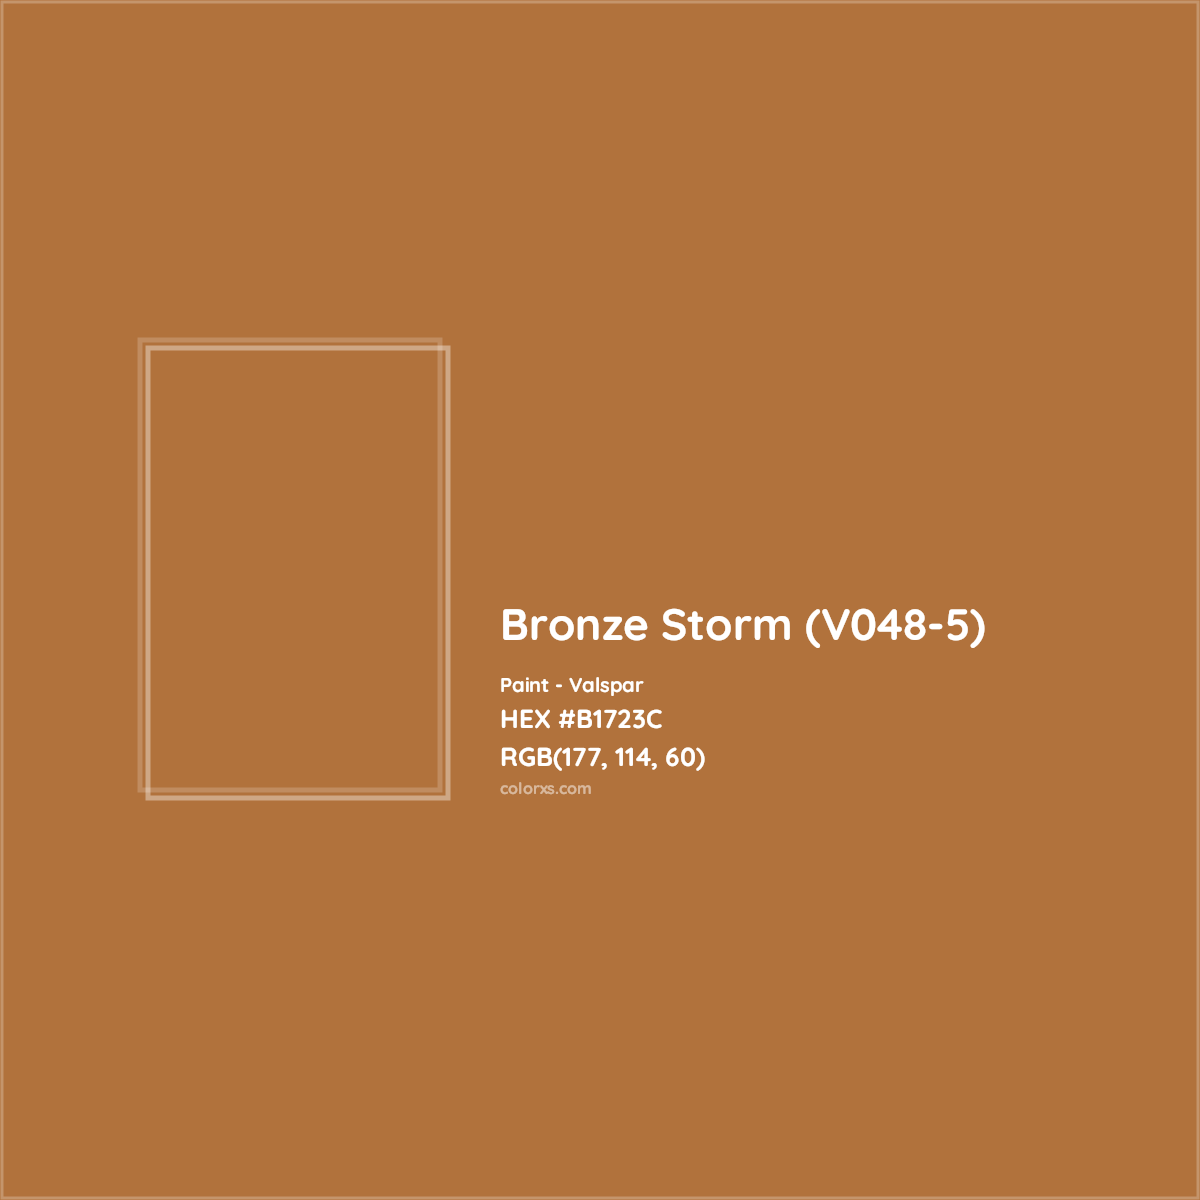 HEX #B1723C Bronze Storm (V048-5) Paint Valspar - Color Code